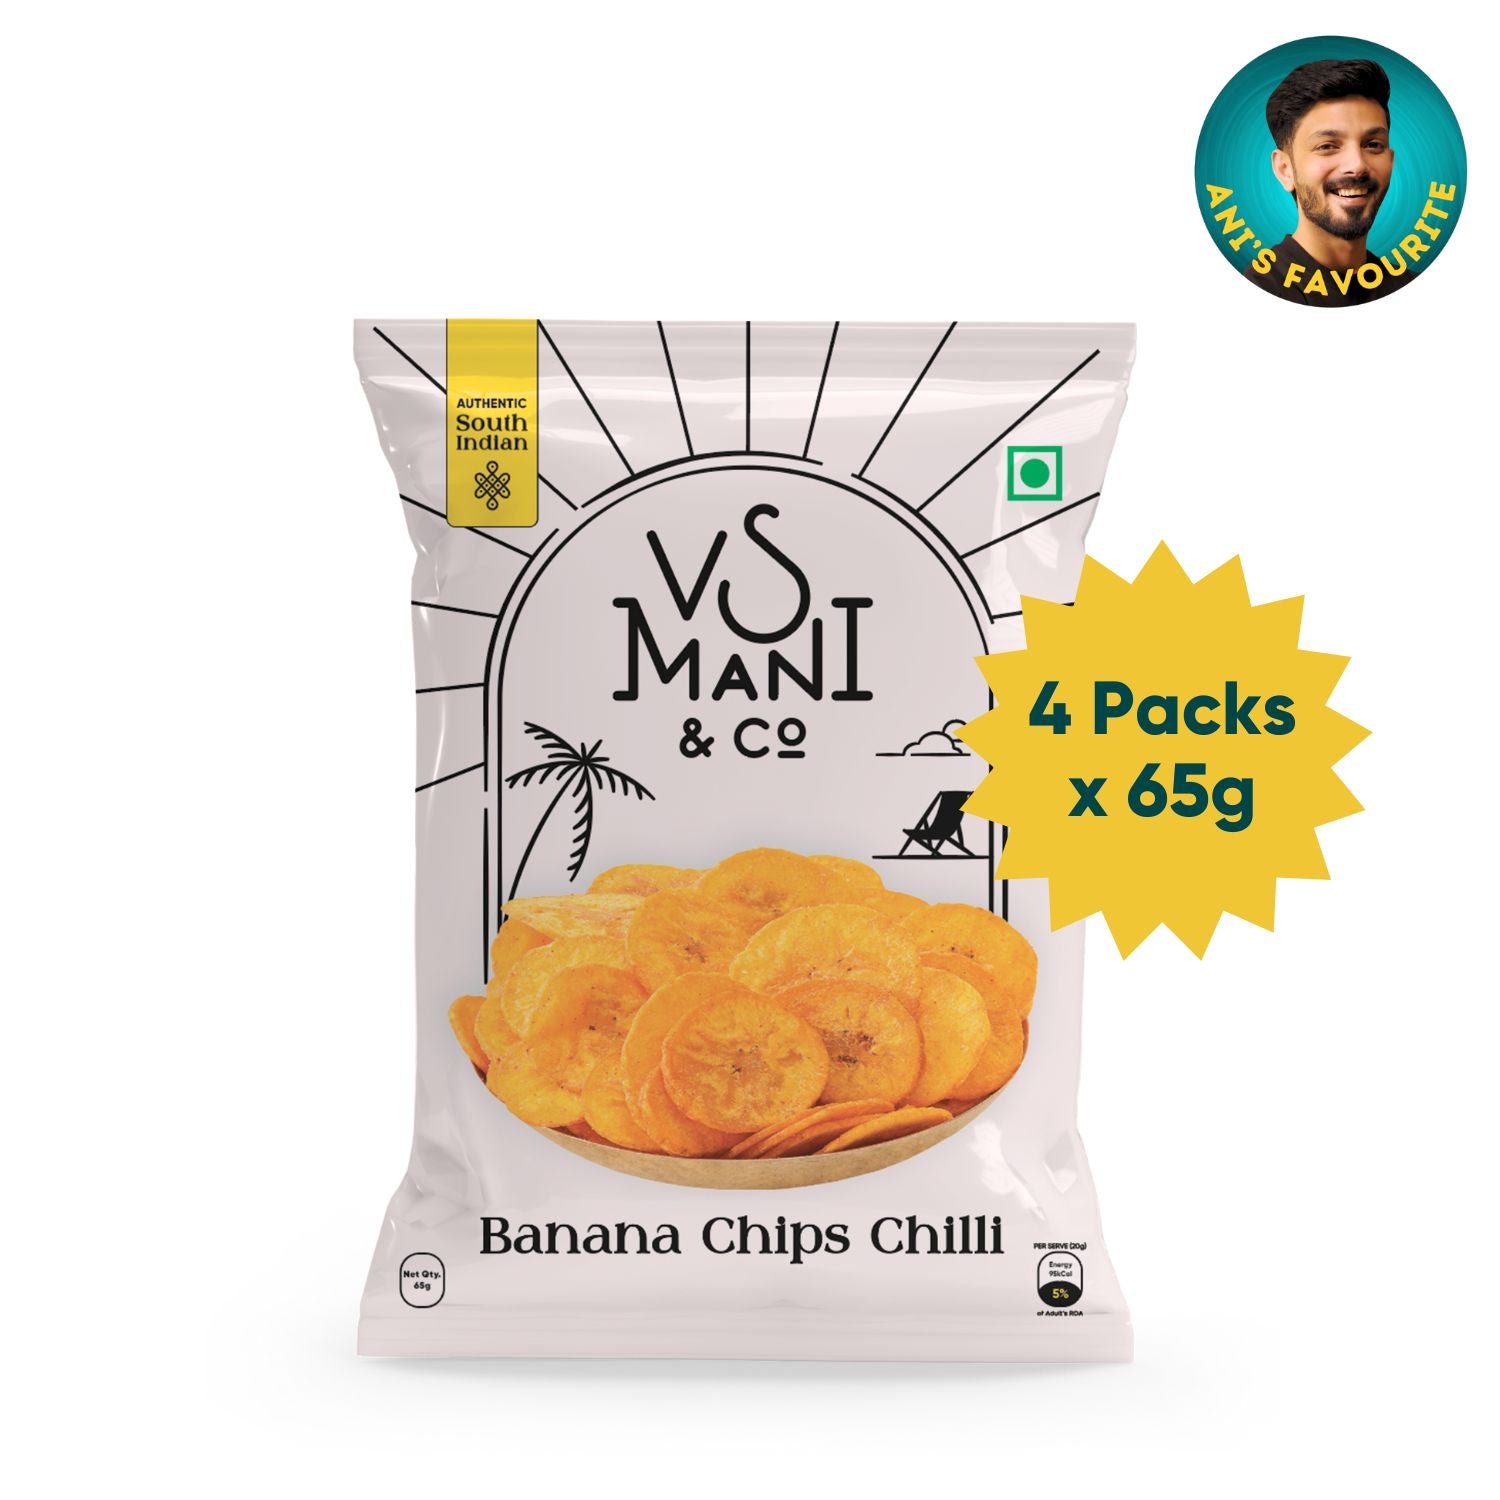 Chilli Banana Chips | 65g x 4 Packs